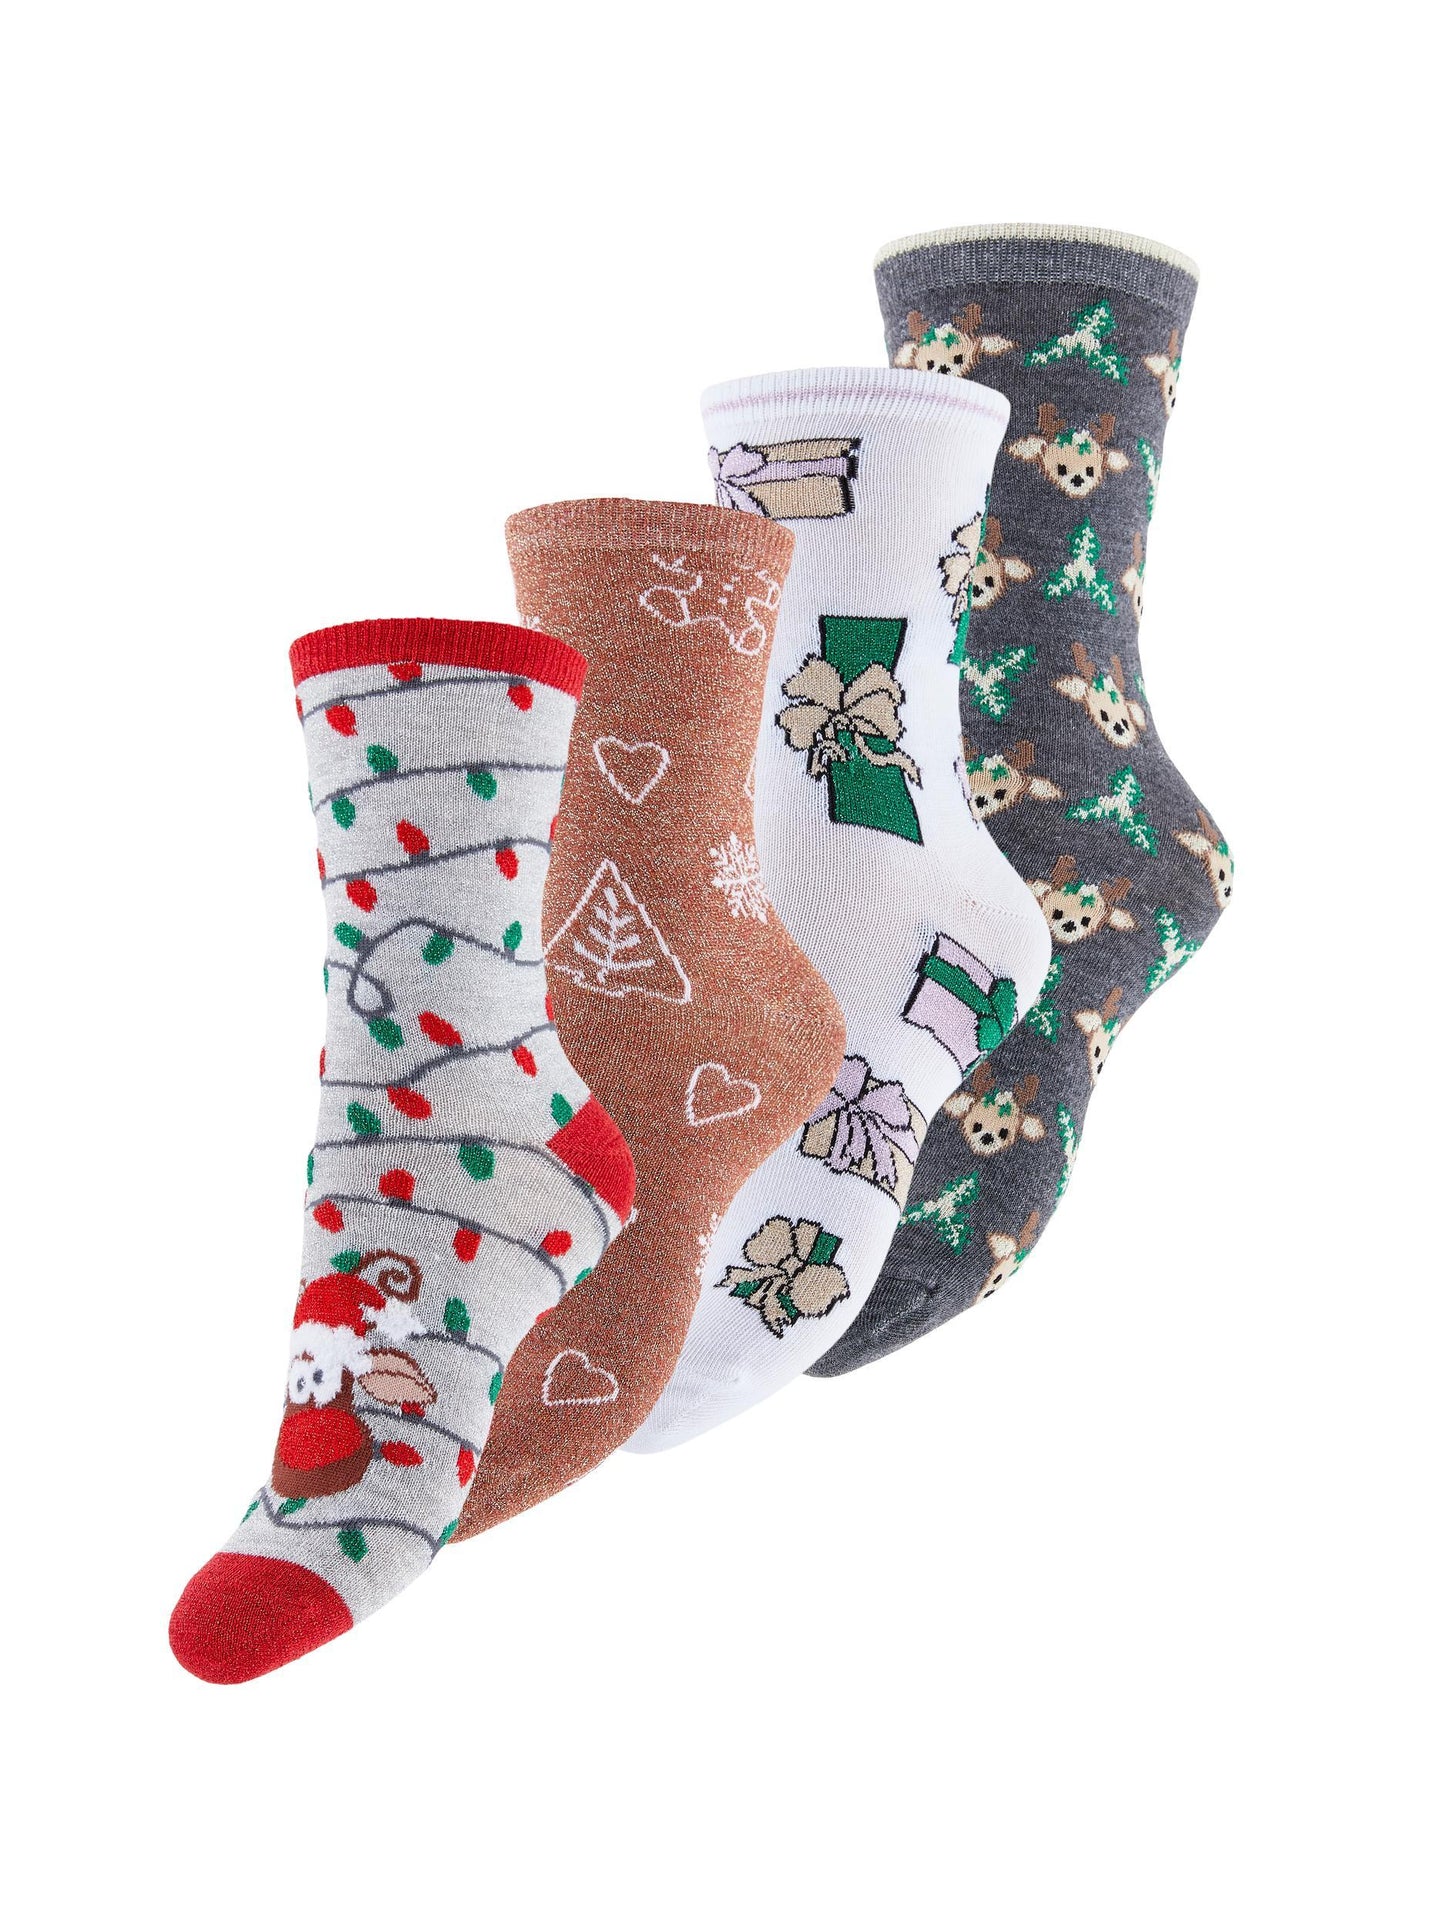 Intimo Ena Christmas Socks Box 4 Pack Kac Pieces